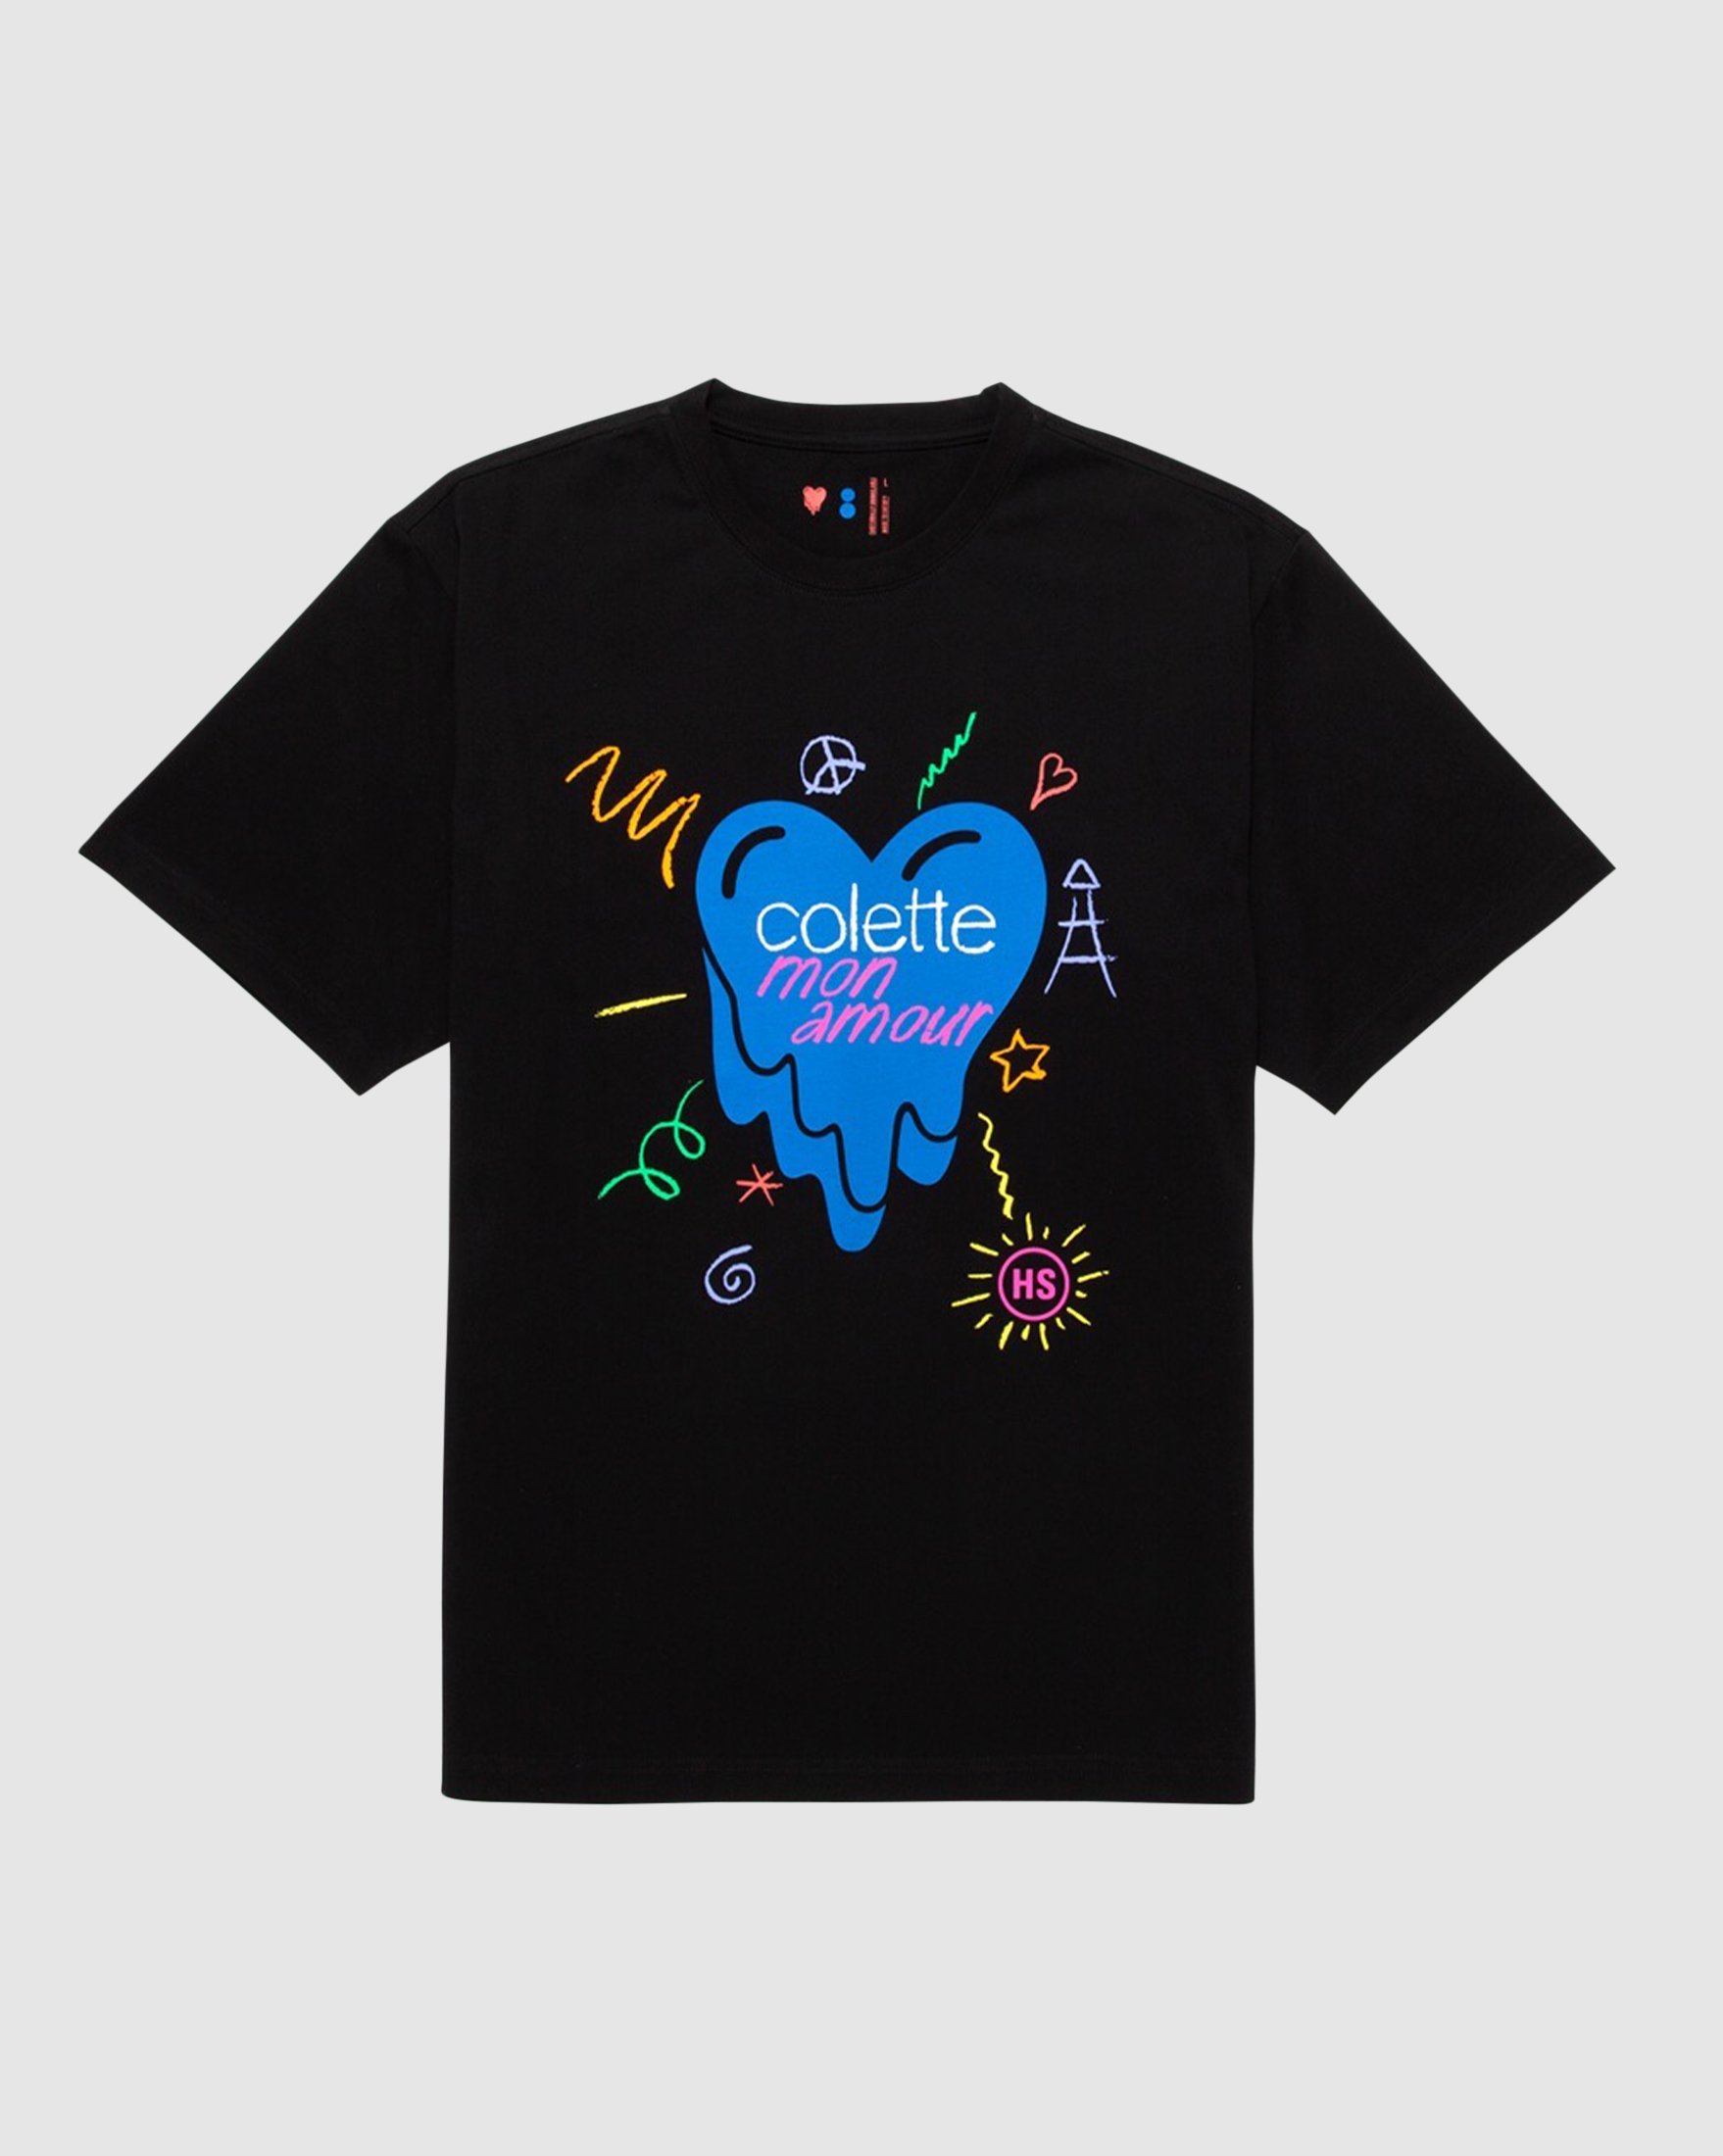 Colette Mon Amour - EU Black Heart T-Shirt - Clothing - Black - Image 1